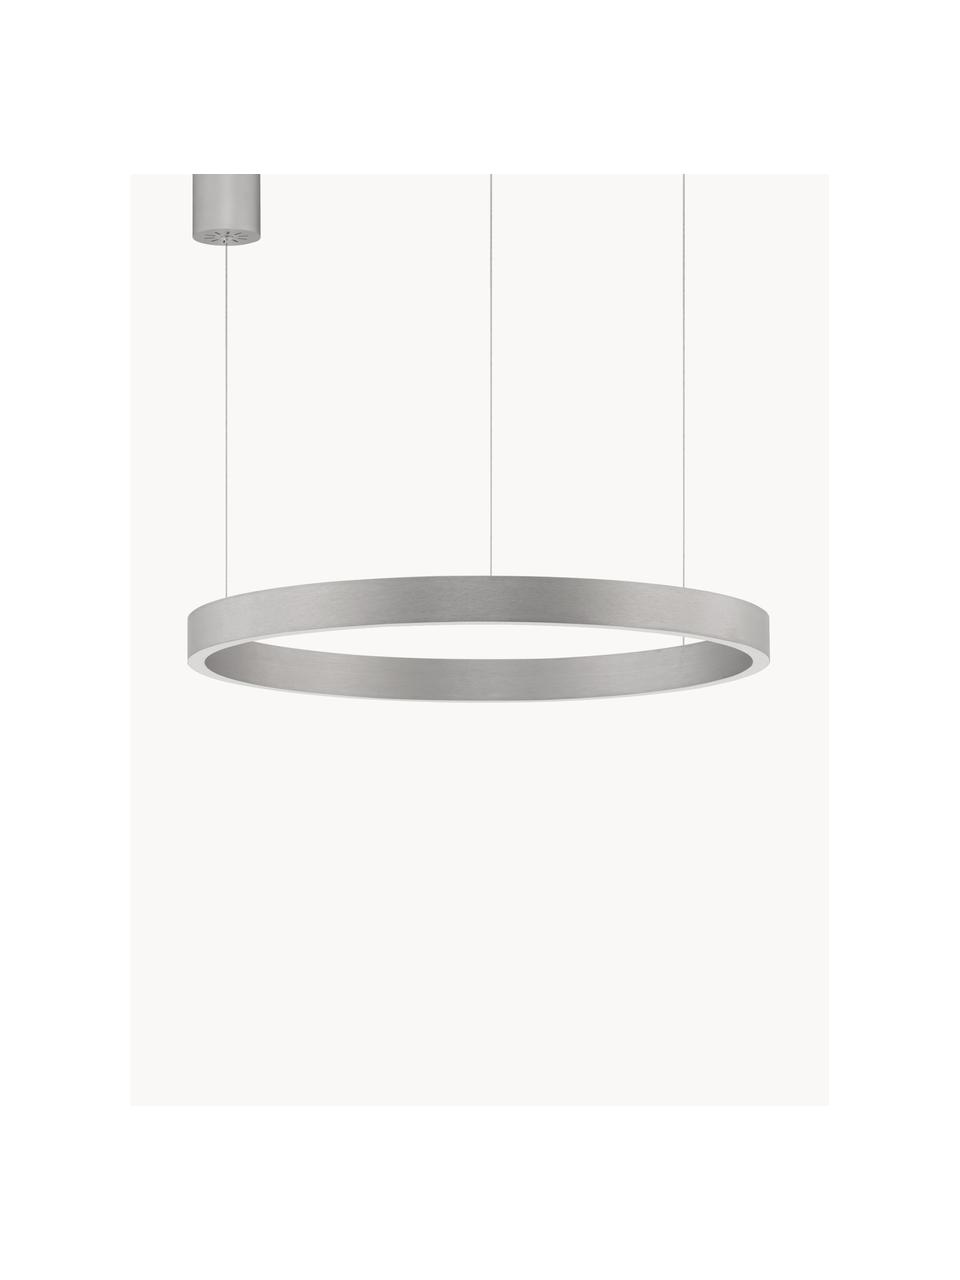 Lampa wisząca LED z funkcją przyciemniania Elowen, różne rozmiary, Odcienie srebrnego, Ø 80 x 5 cm